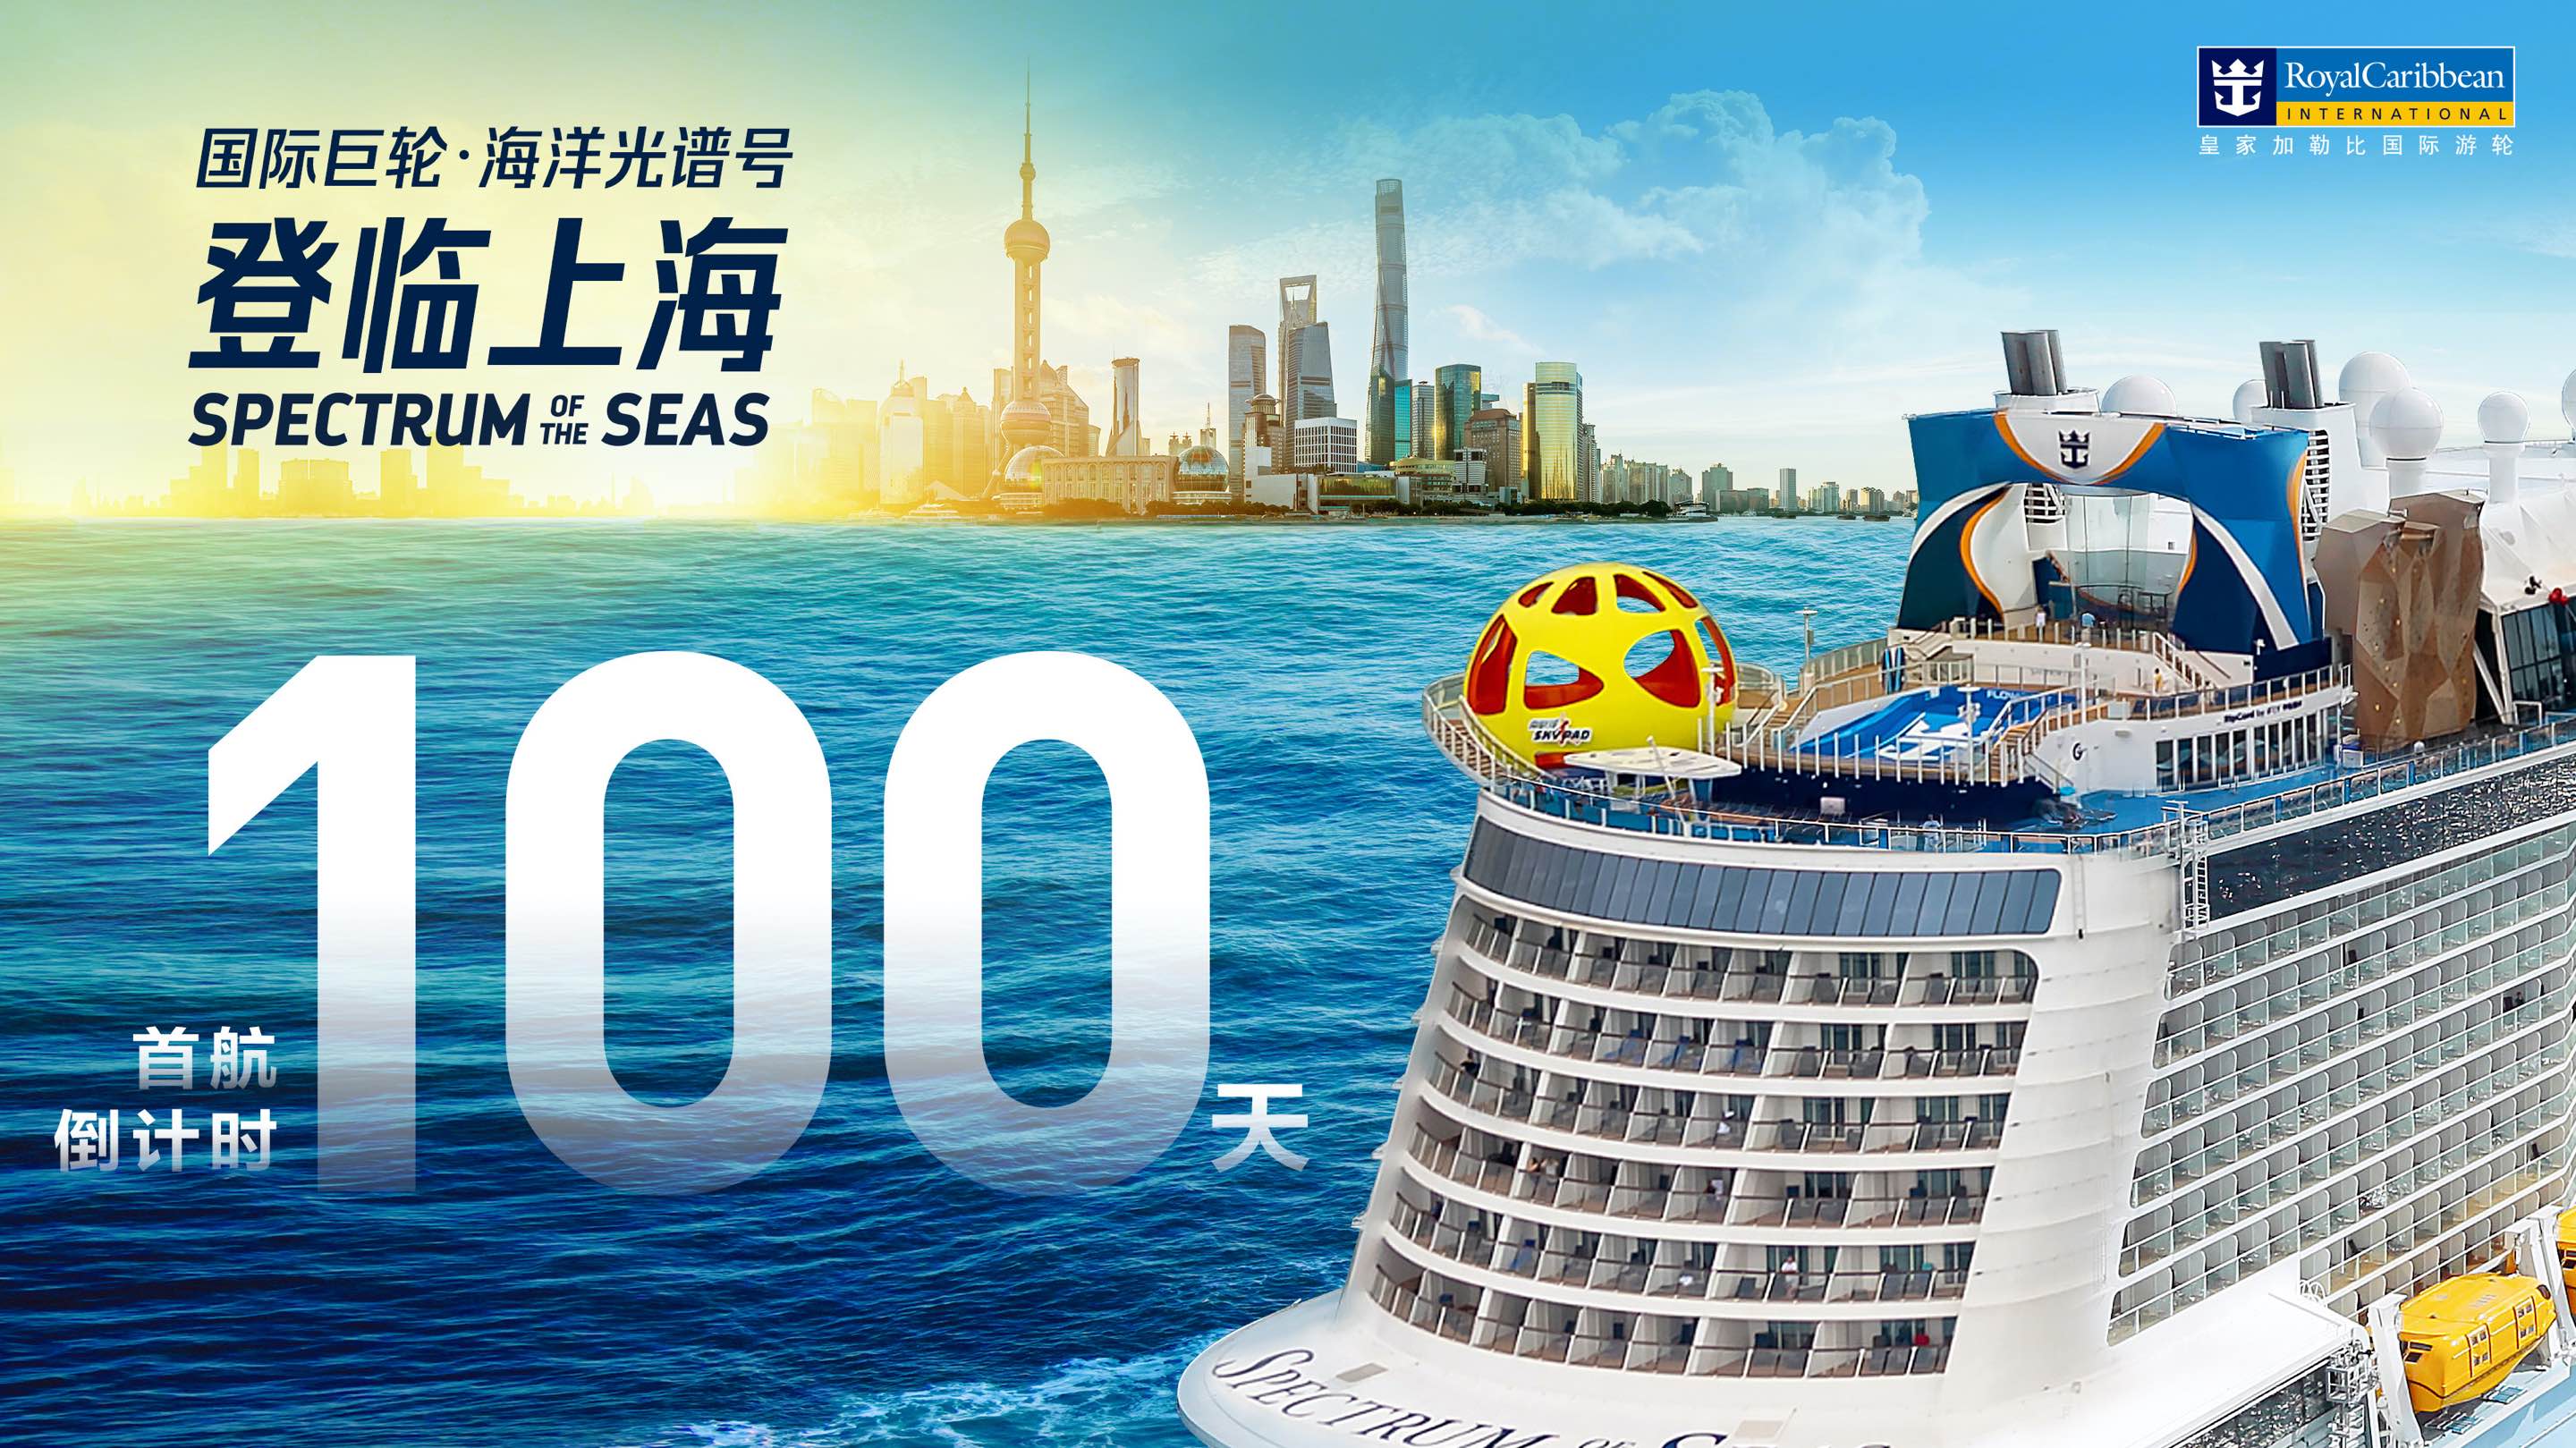 国际巨轮 “海洋光谱号” 上海首航倒计时100天.jpg